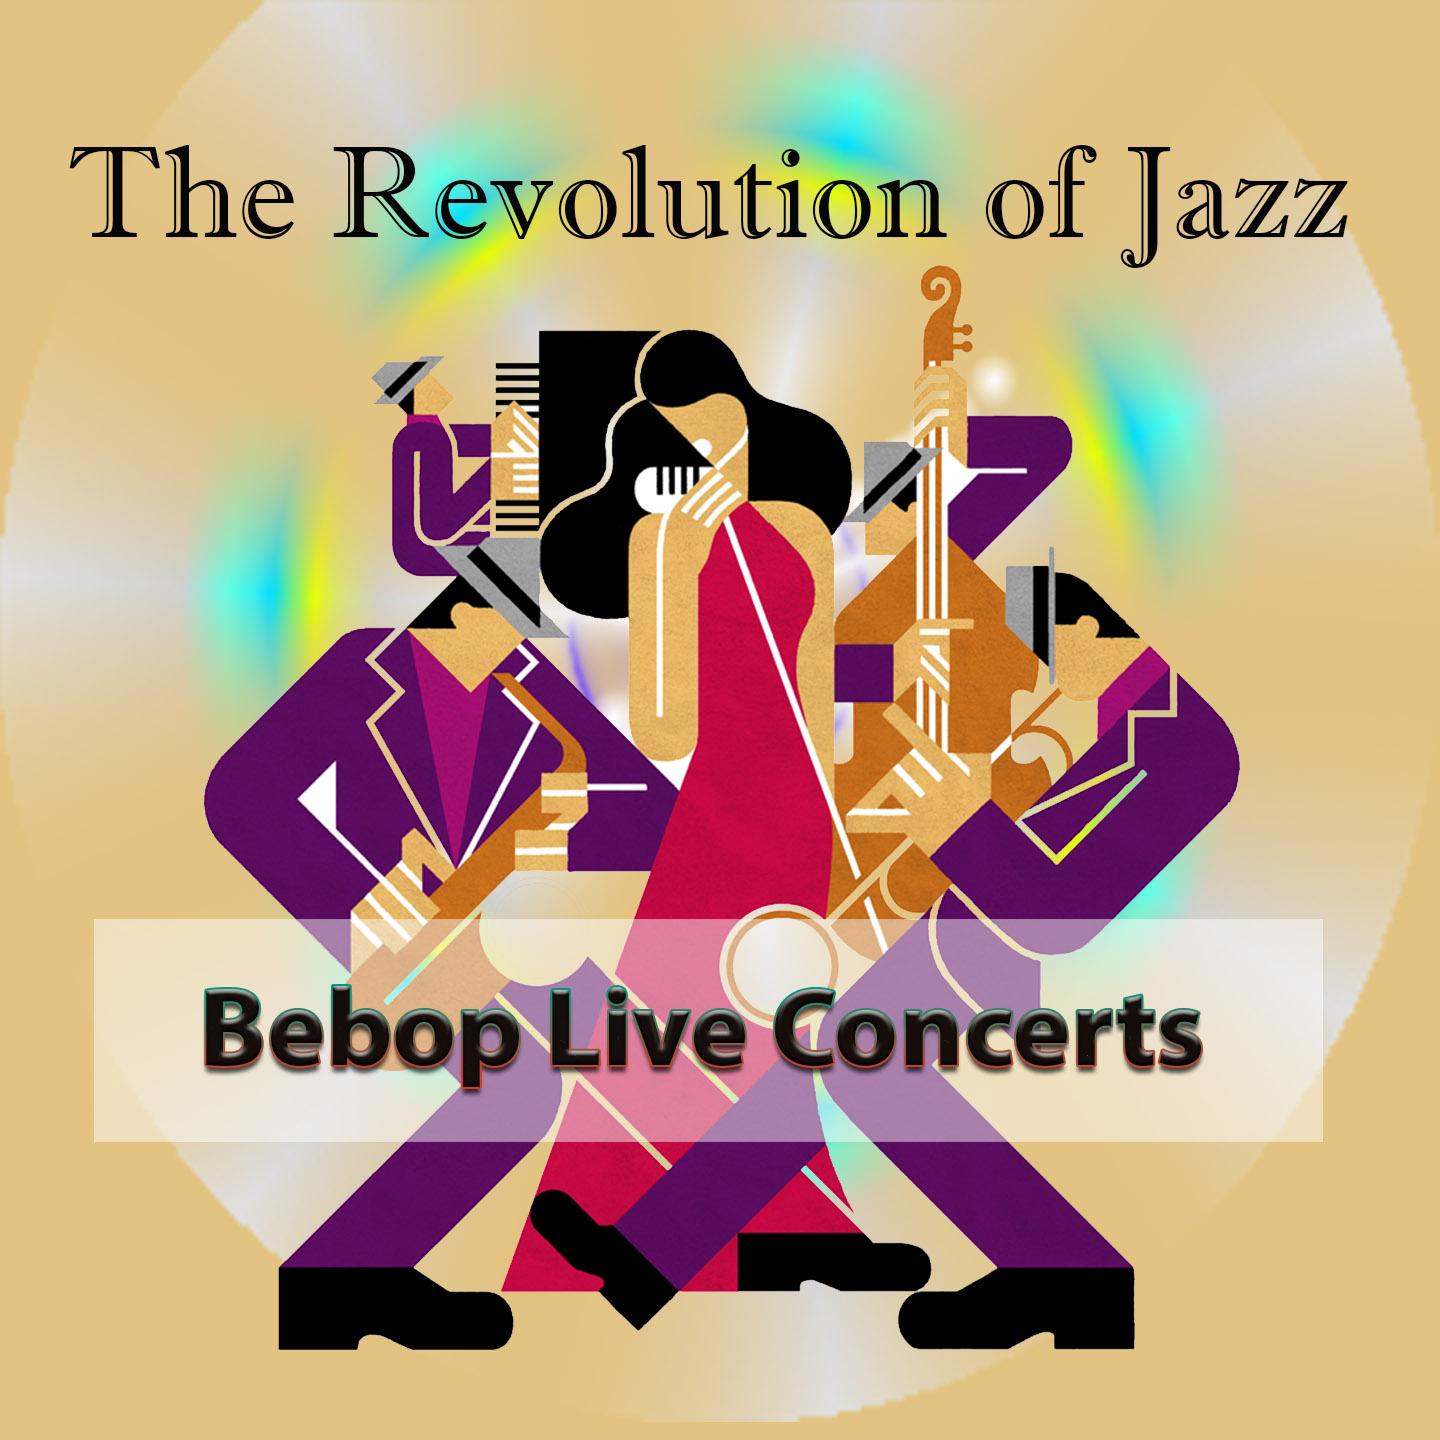 The Revolution of Jazz, Bebop Live Concerts